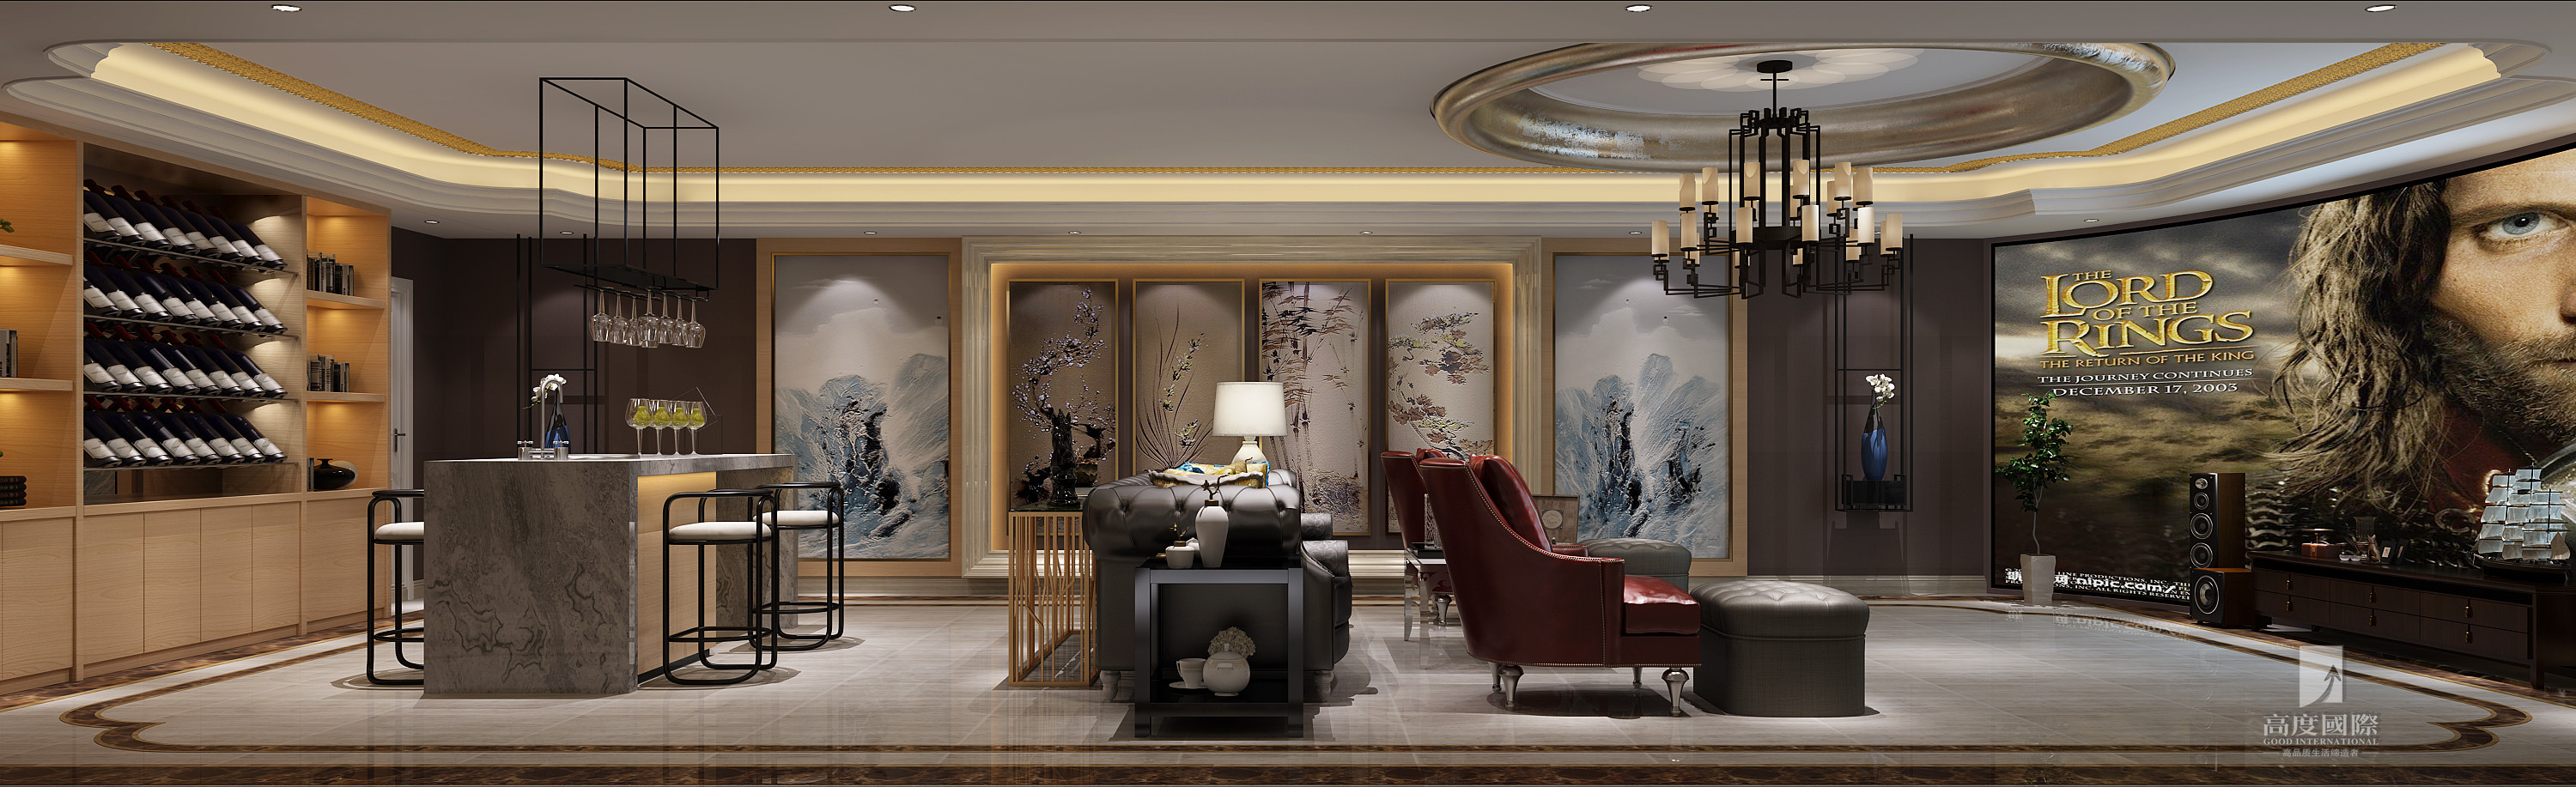 新中式风格 高度国际 客厅图片来自杭州别墅装修设计在378平米排屋别墅筑造新中式风格的分享